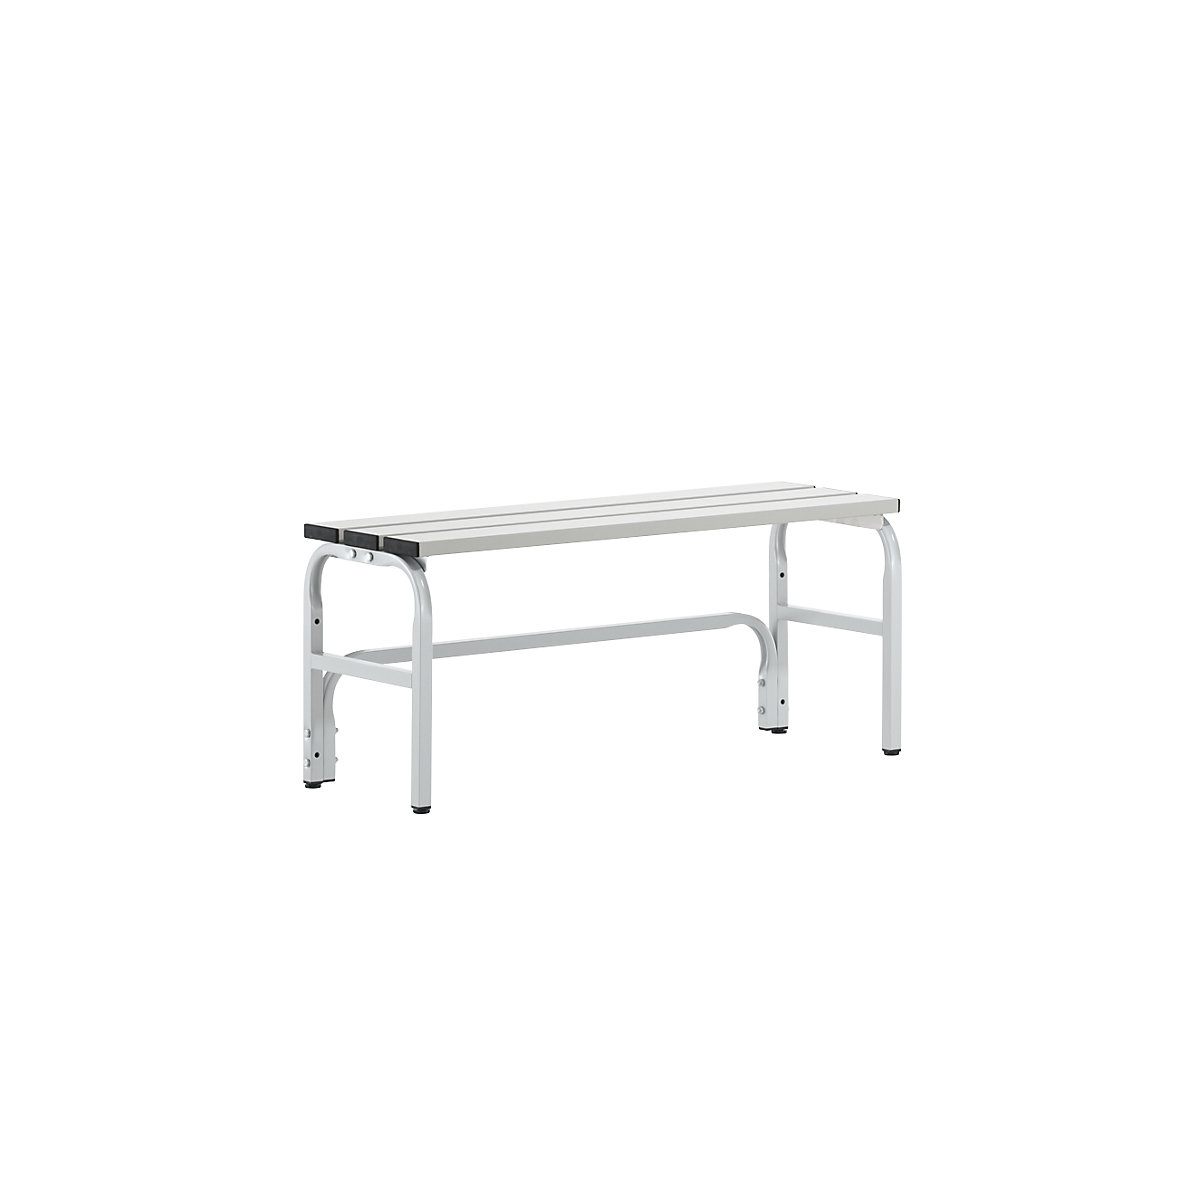 Sypro – Šatňová lavica s hliníkovými lištami, v x h 450 x 350 mm, dĺžka 1015 mm, svetlošedá